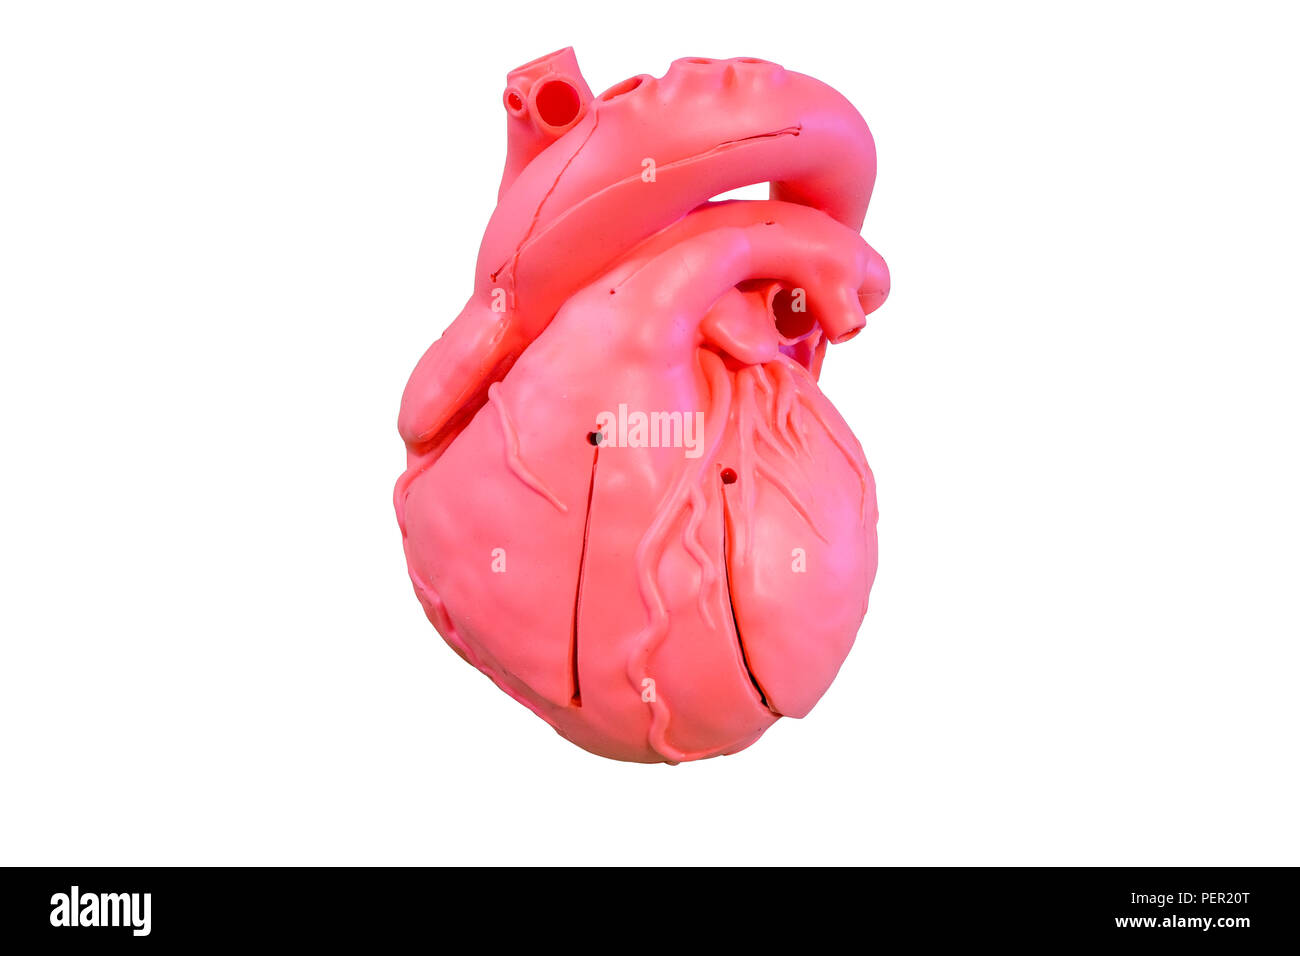 Anatomia del modello tipo di silicone del sistema cardiovascolare per uso nella formazione medica, isolati su sfondo bianco Foto Stock